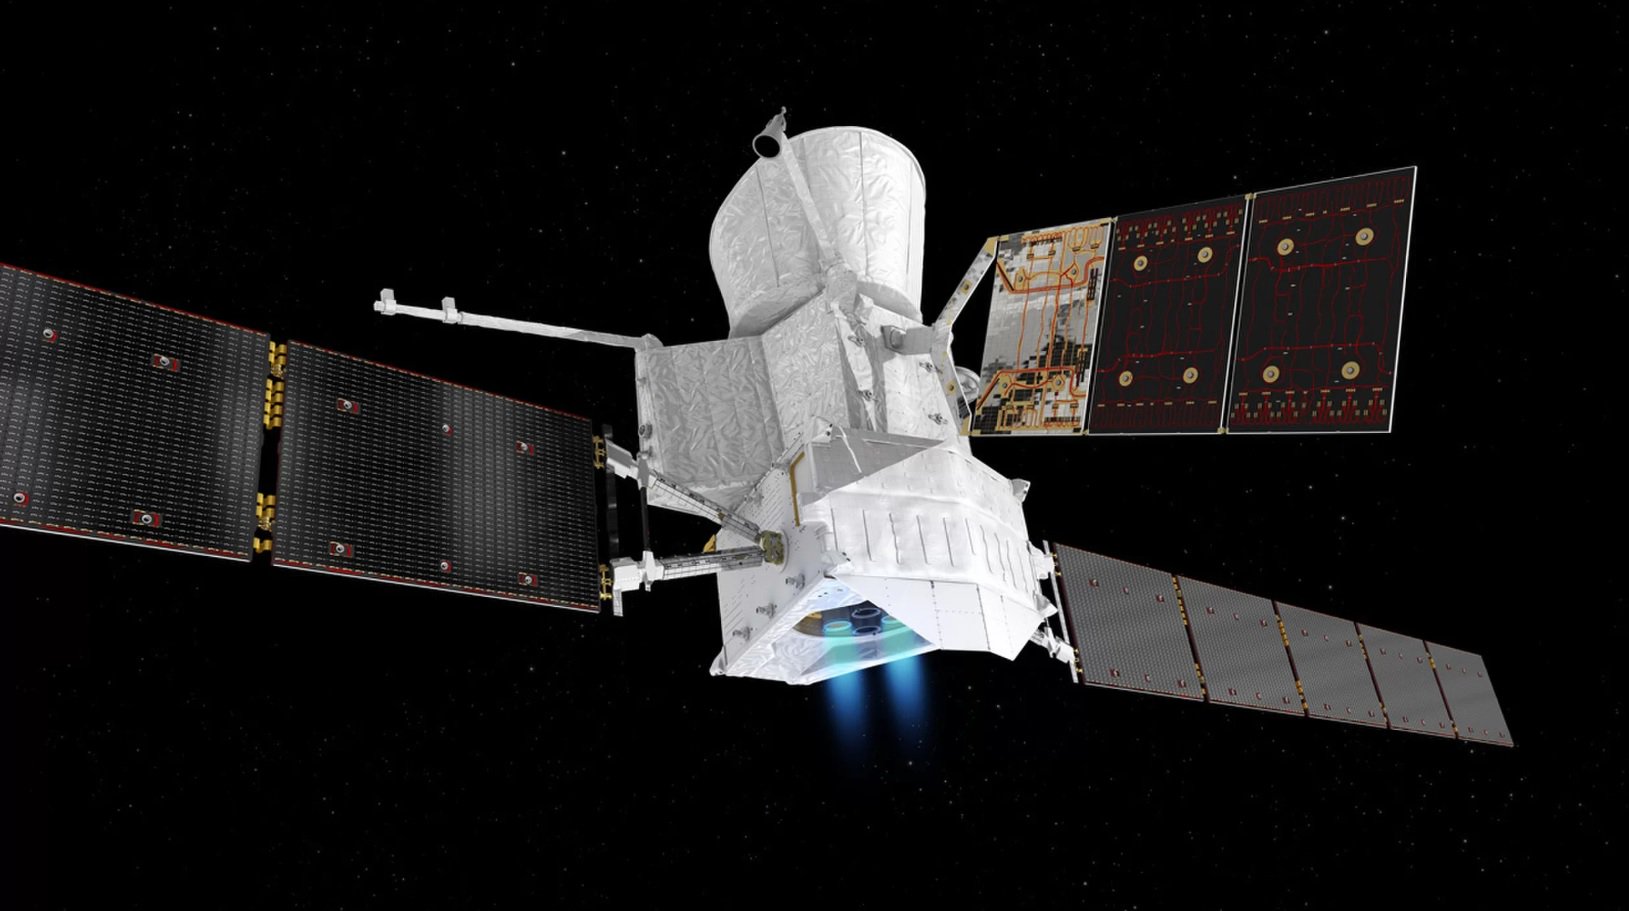 Ion moteurs de la mission BepiColombo ont passé la première analyse dans l'espace